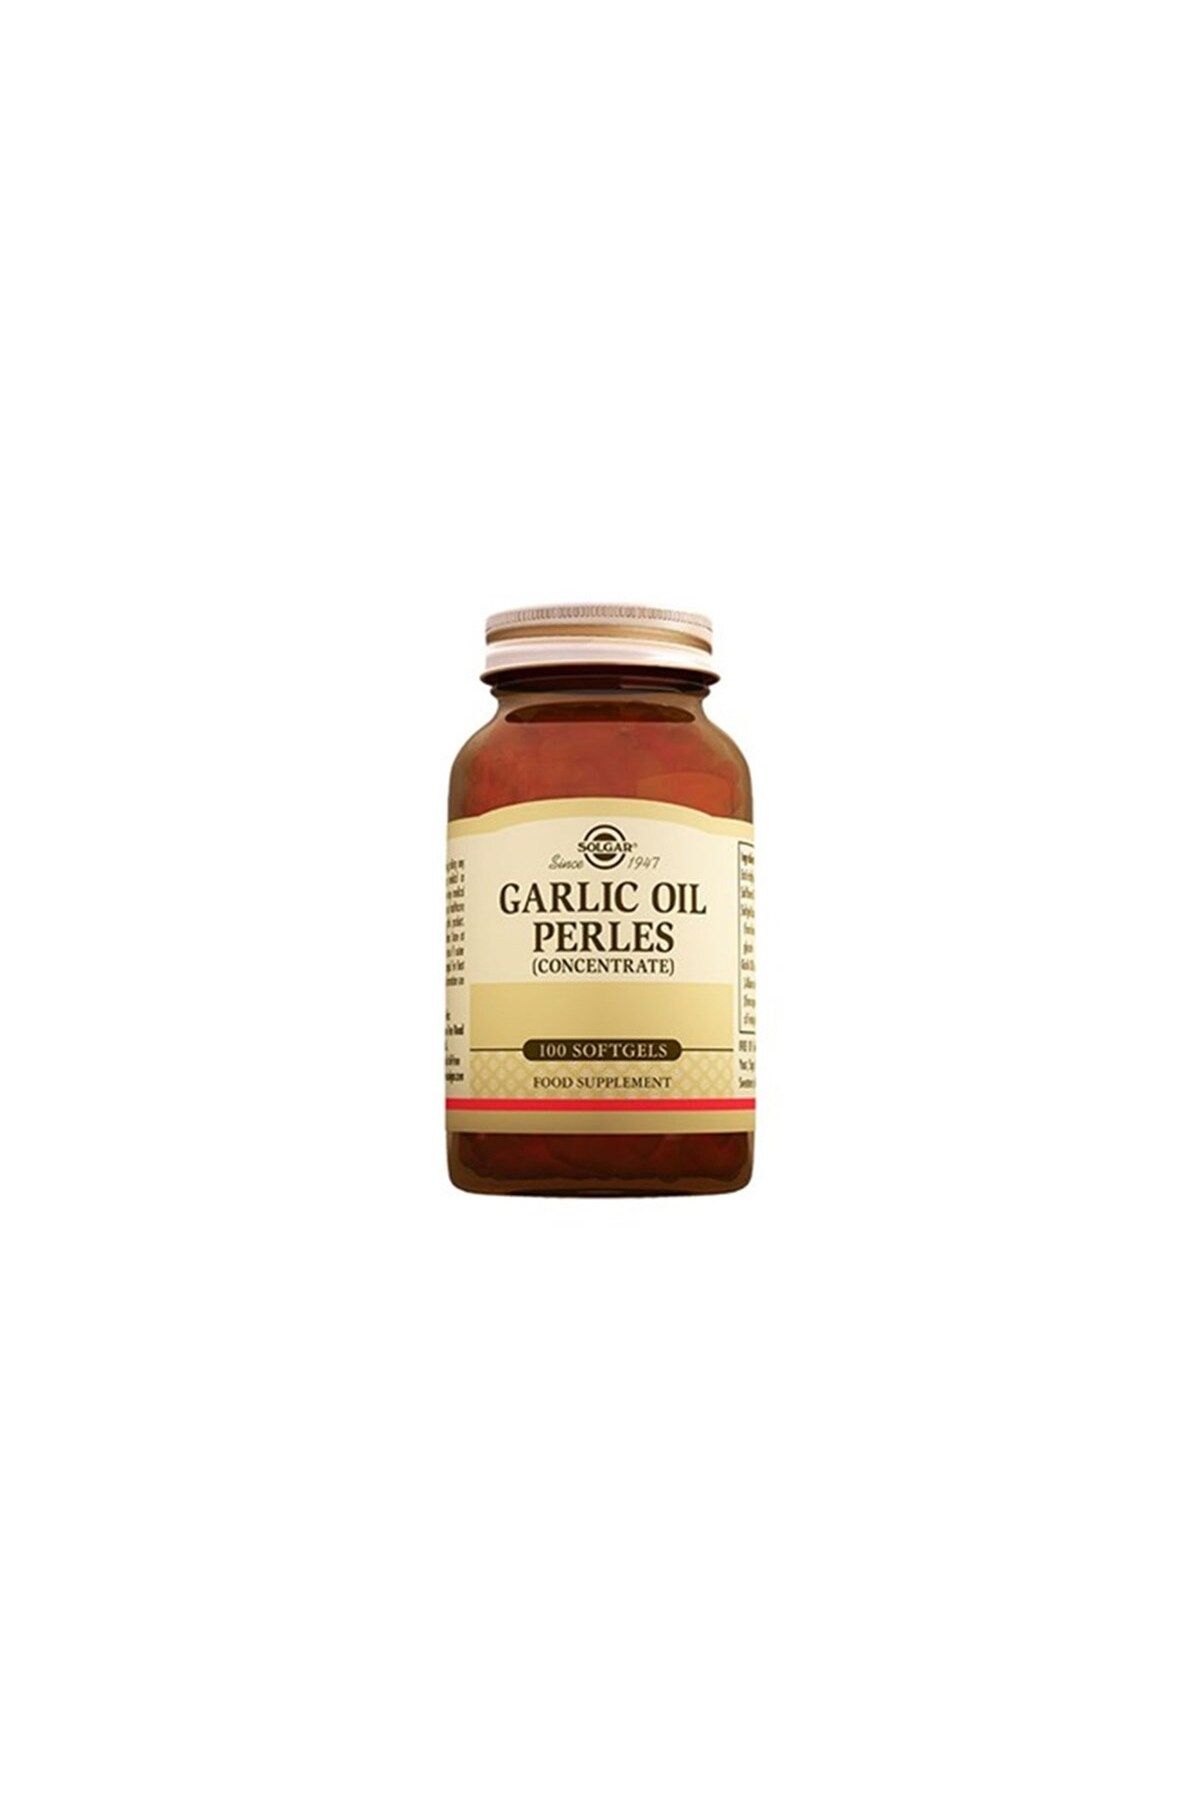 Solgar Garlic Oil Perles 100 Softjel